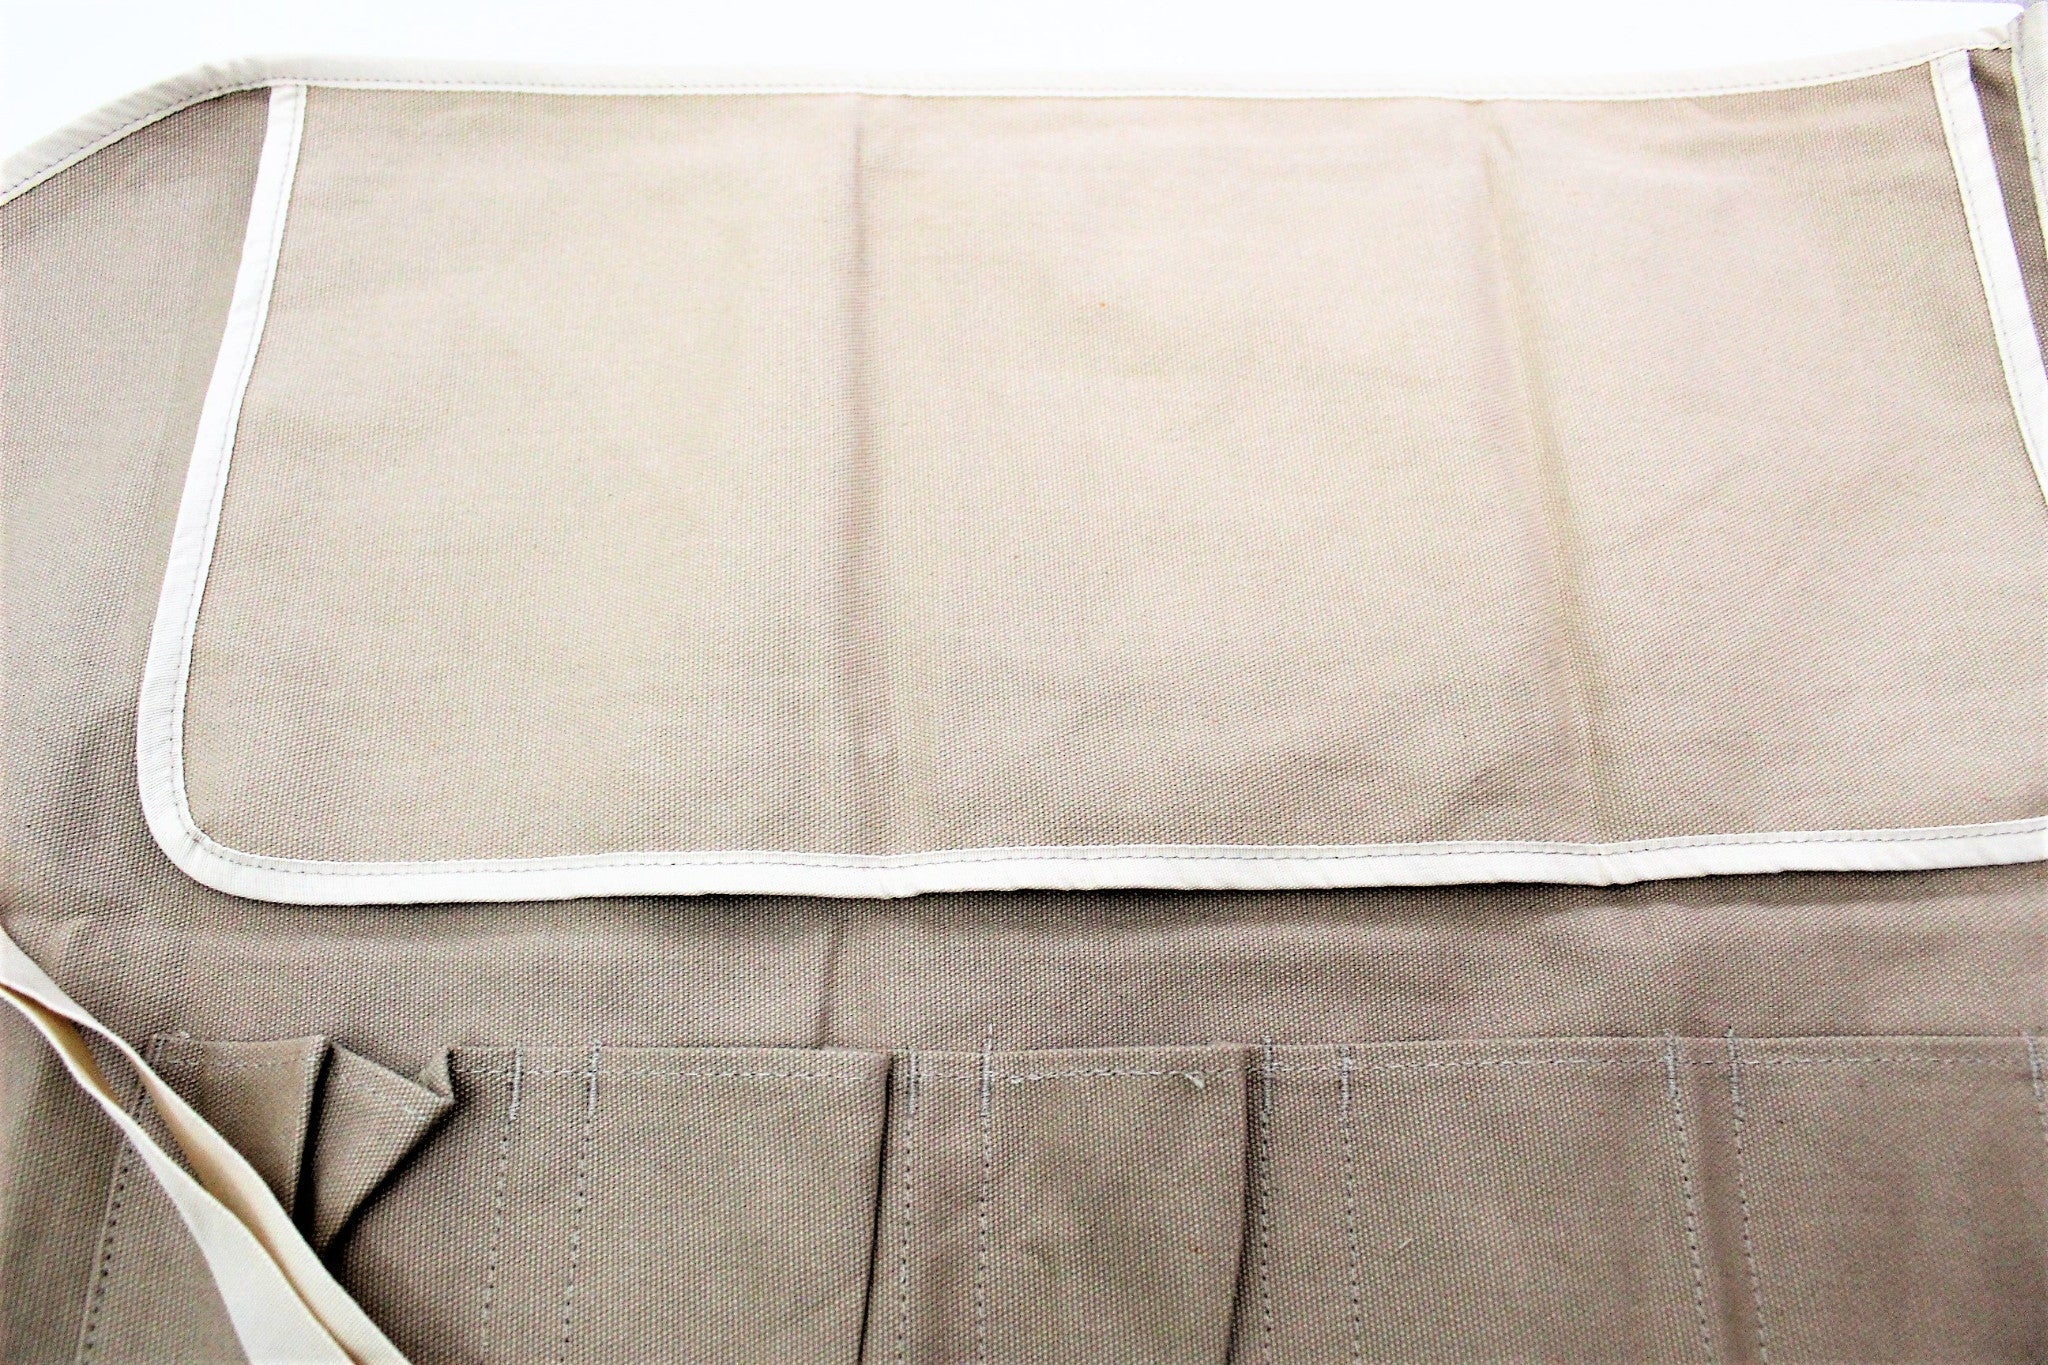 Felt Fabric Shopping Bag on White Background. Stock Photo - Image of gift,  pattern: 180060236